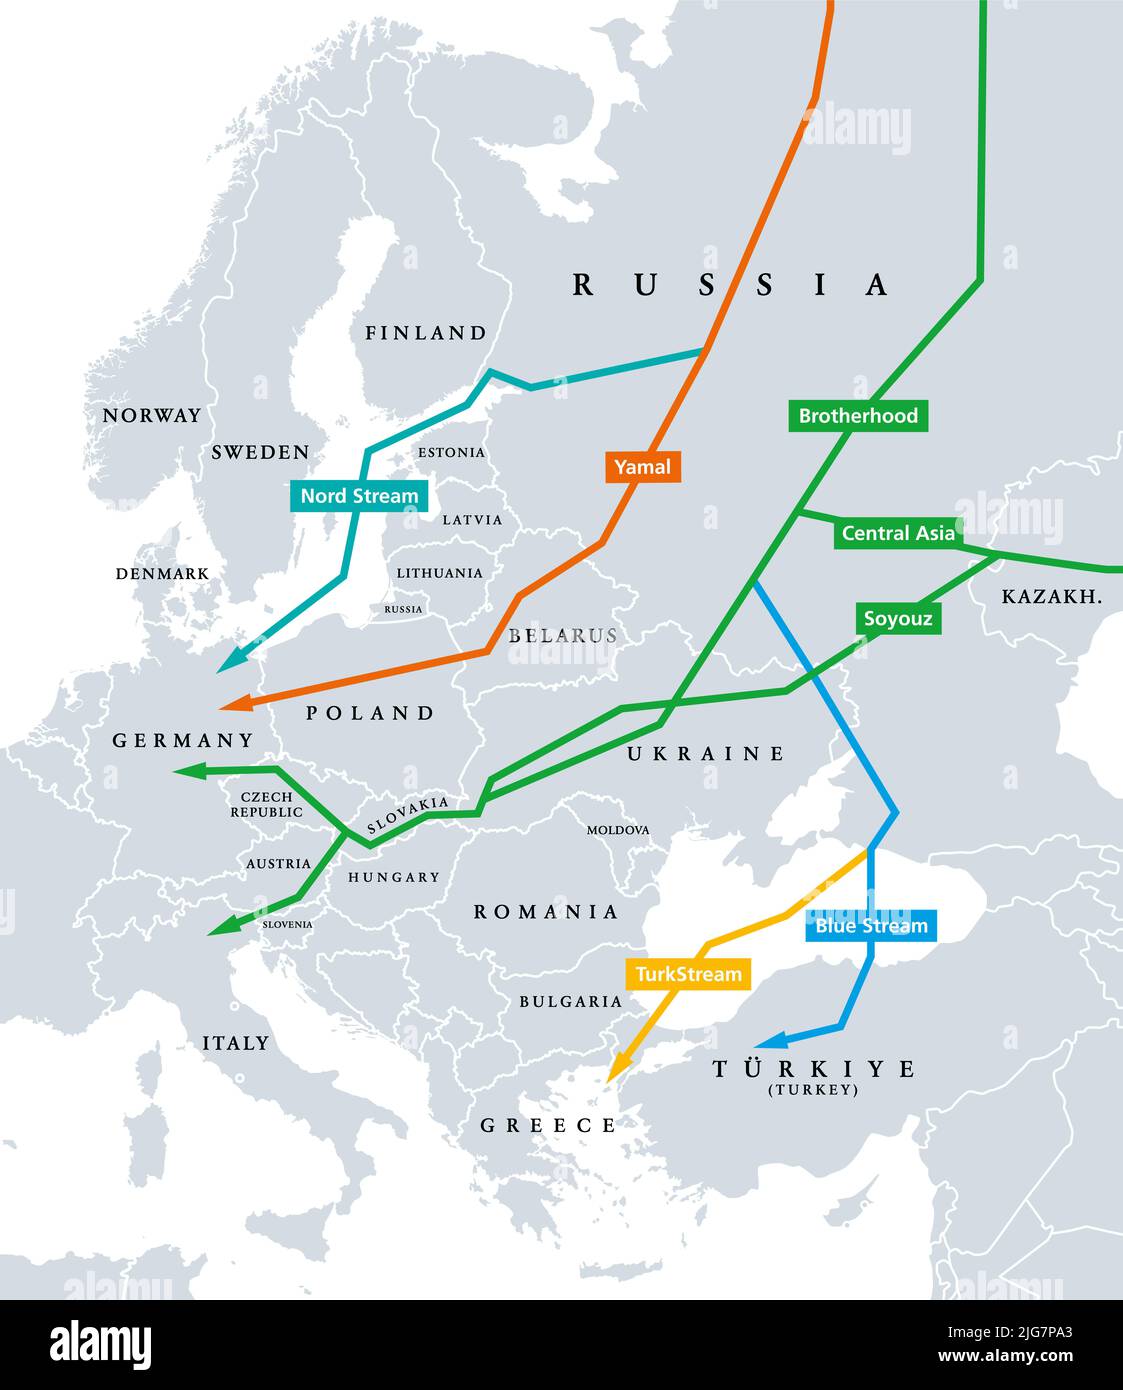 Erdgaspipelines von Russland nach Europa, politische Landkarte. Nord Stream, Yamal, Bruderschaft, Zentralasien, Soyouz, Blue Stream und TurkStream. Stockfoto